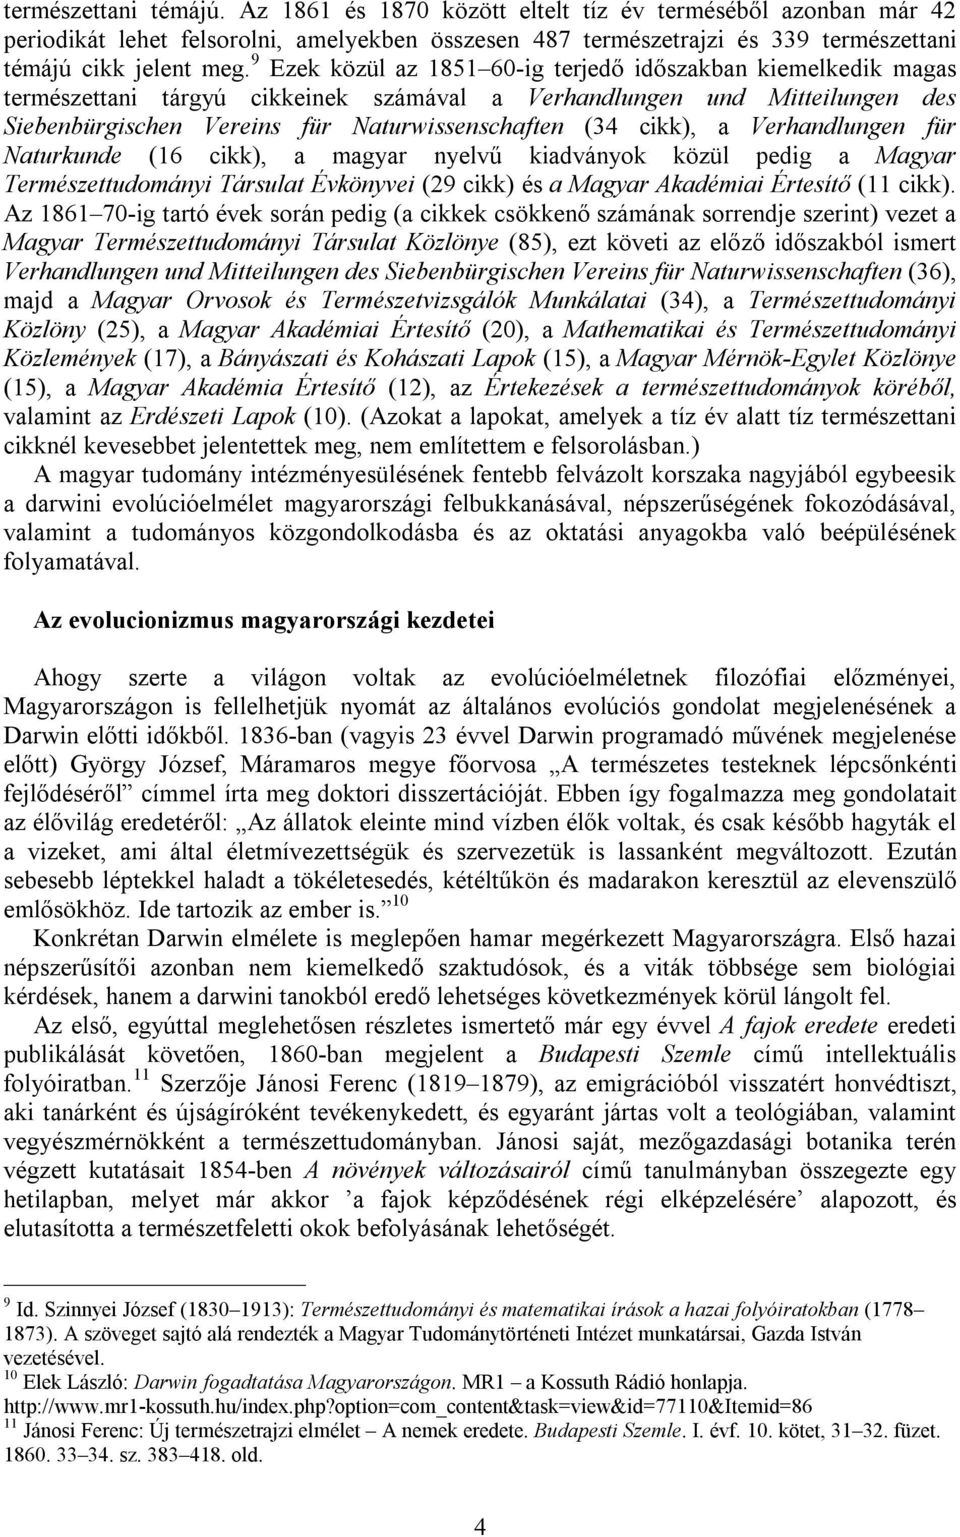 cikk), a Verhandlungen für Naturkunde (16 cikk), a magyar nyelvű kiadványok közül pedig a Magyar Természettudományi Társulat Évkönyvei (29 cikk) és a Magyar Akadémiai Értesítő (11 cikk).